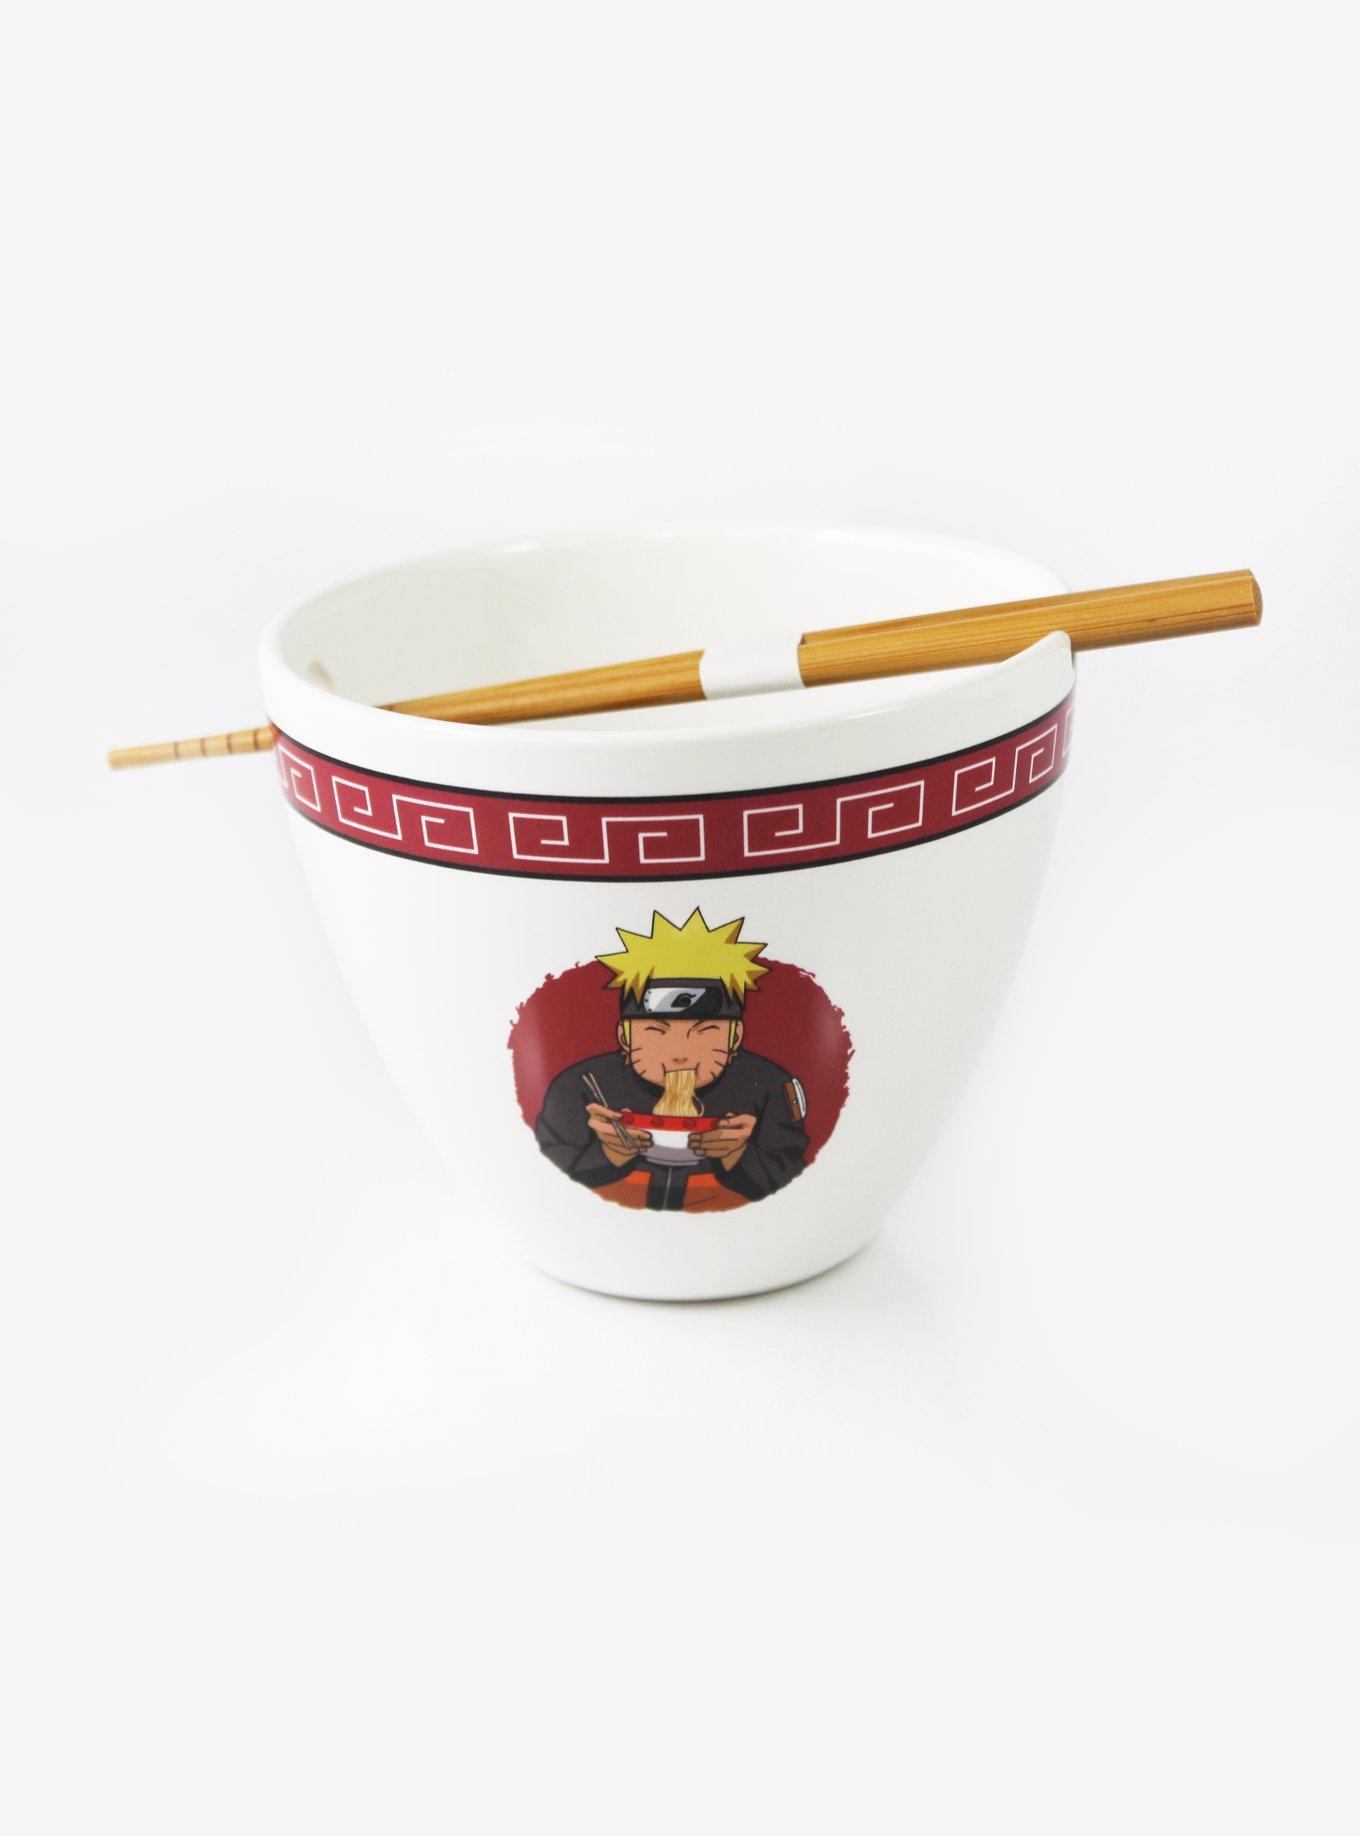 Naruto Shippuden Ramen Soup Bowl With Wooden Chopsticks 14 oz Ceramic Ichiraku 